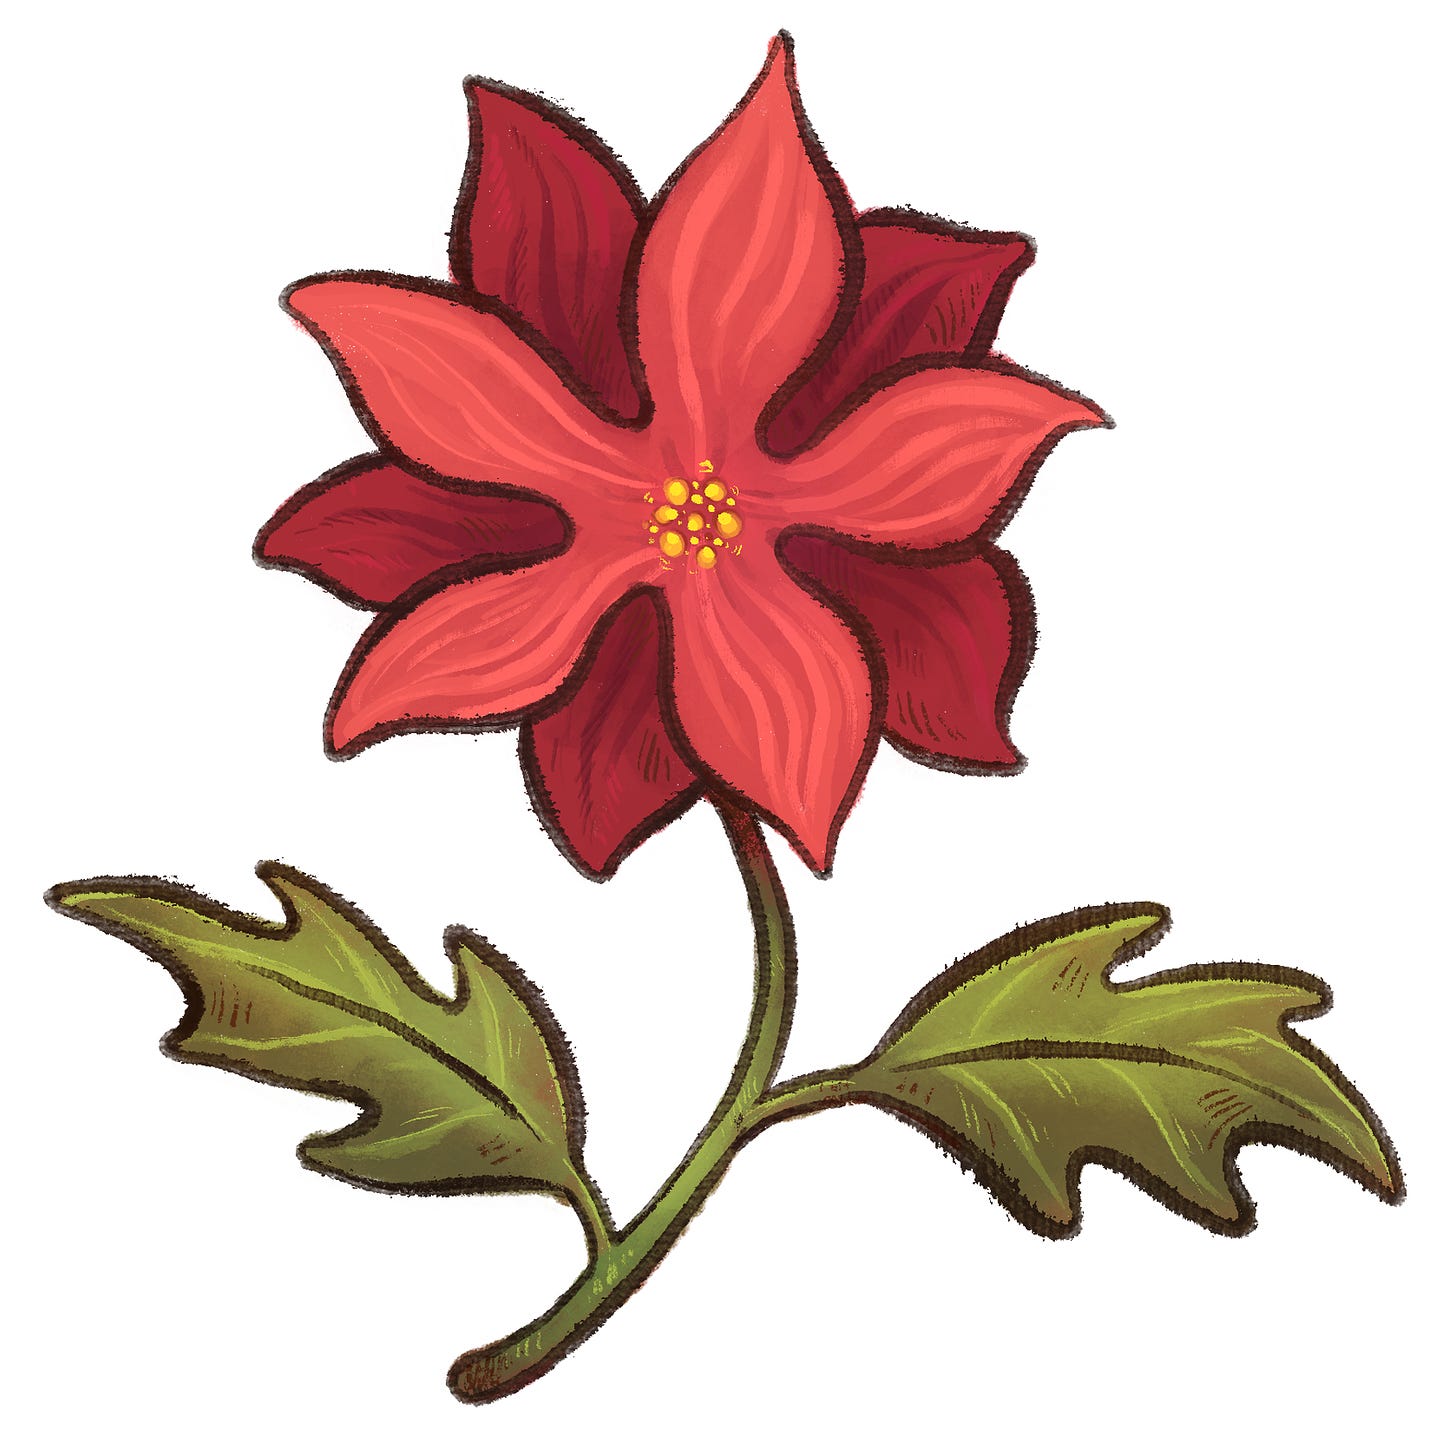 A handdrawn digital illustration of a stylized poinsettia flower.